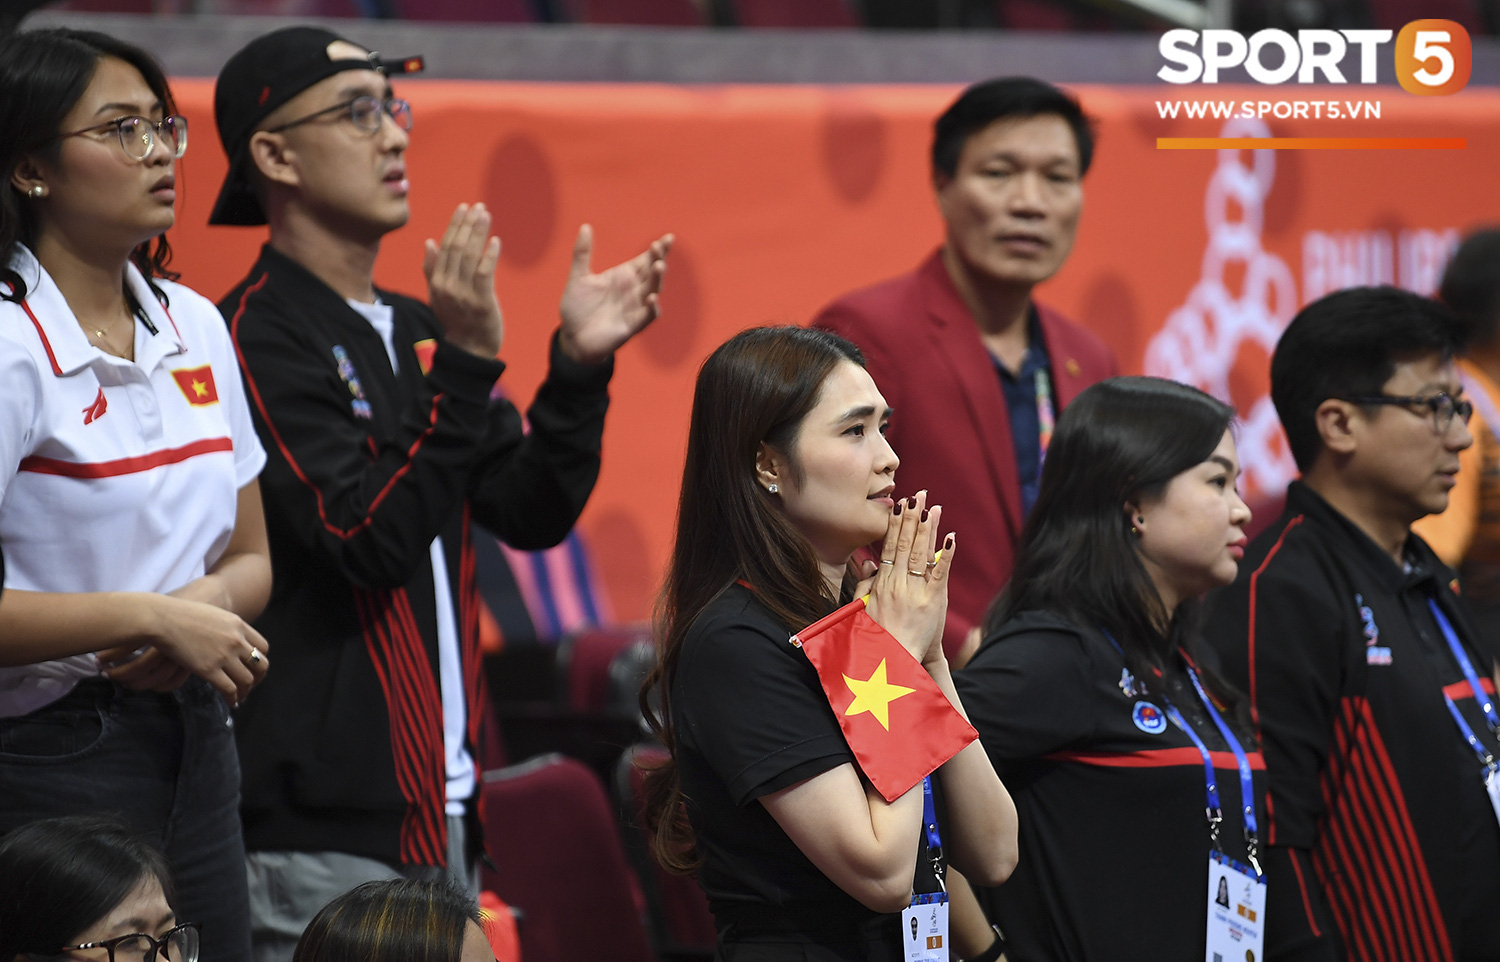 Tan giấc mộng vàng ở SEA Games 30, tuyển bóng rổ Việt Nam hướng tới tấm huy chương đồng thứ 2 - Ảnh 11.